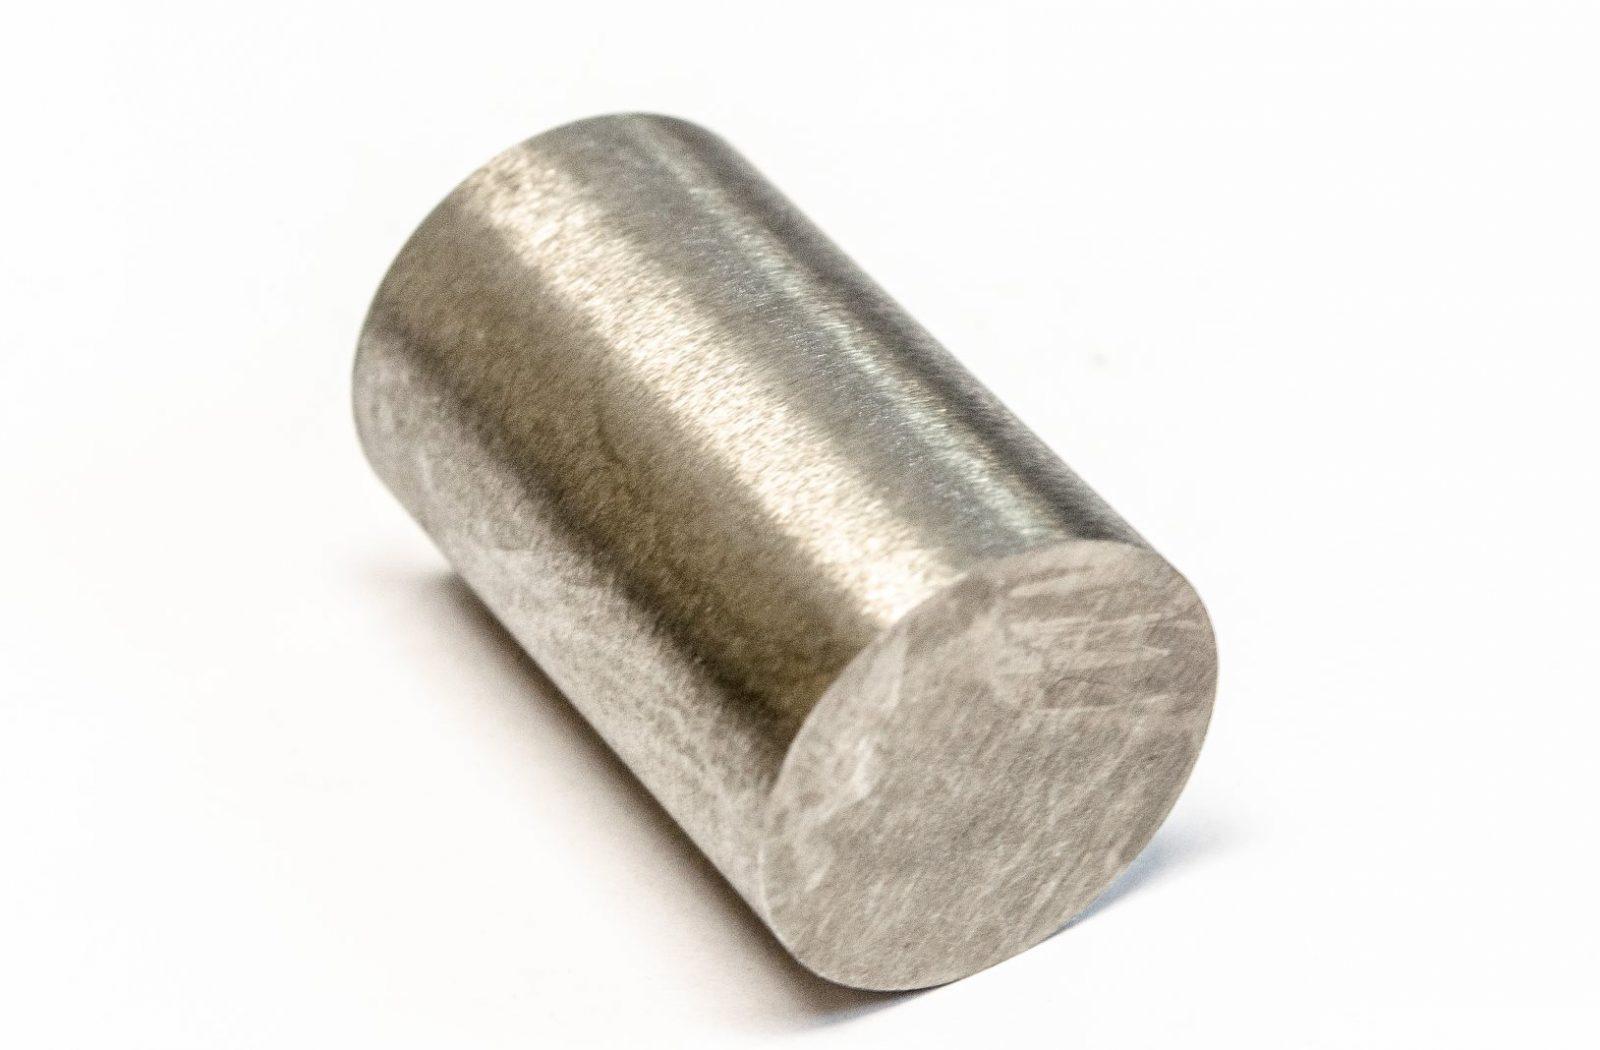 Tungsten Crankshaft Balancing Weights0.755"  Diameter X 1.005" Length 